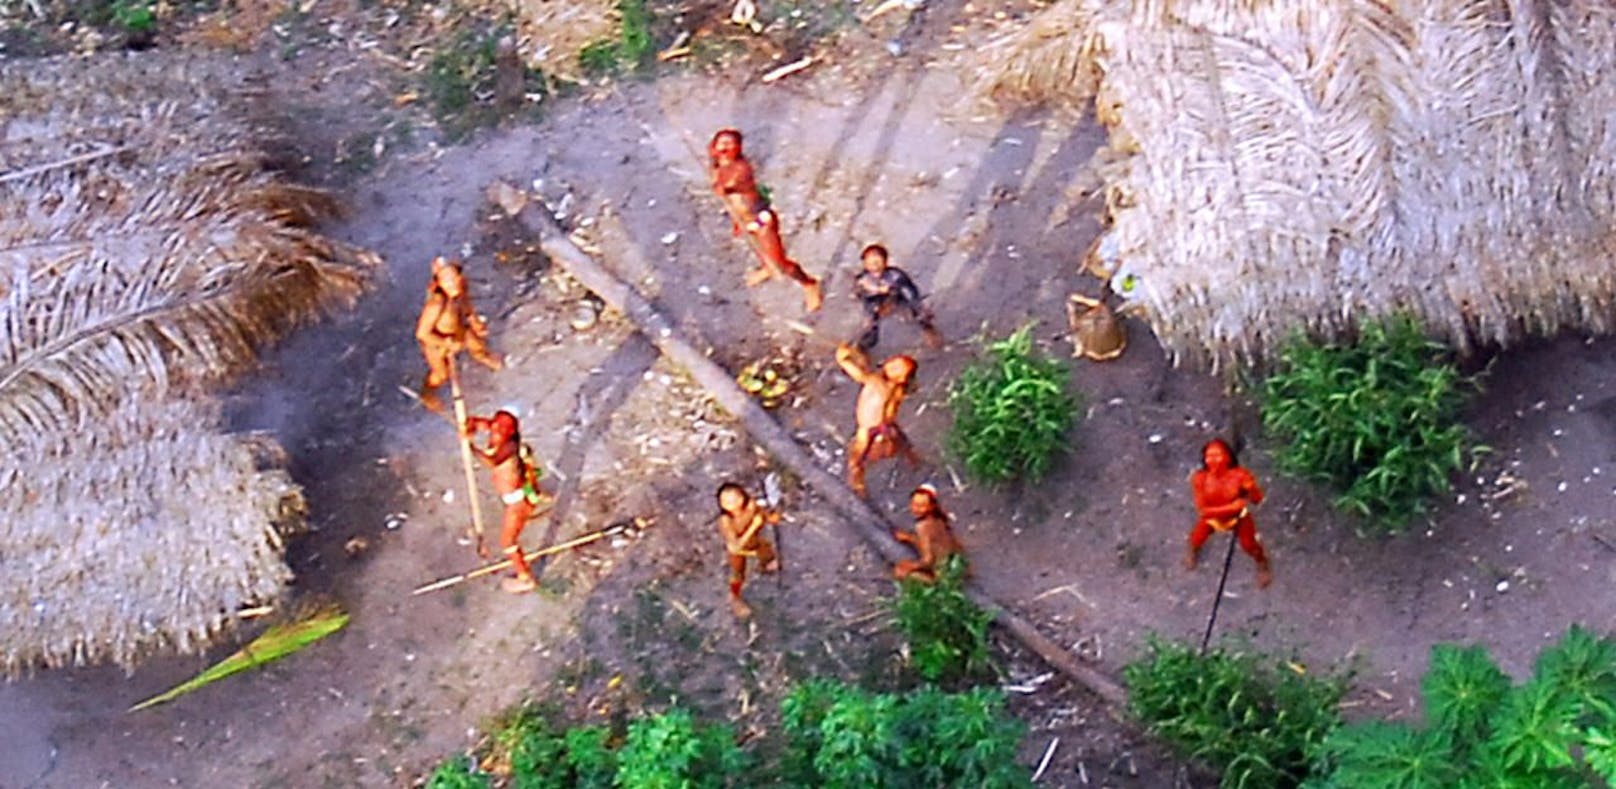 2008 wurde der Stamm mit einer Drohne gefilmt. 